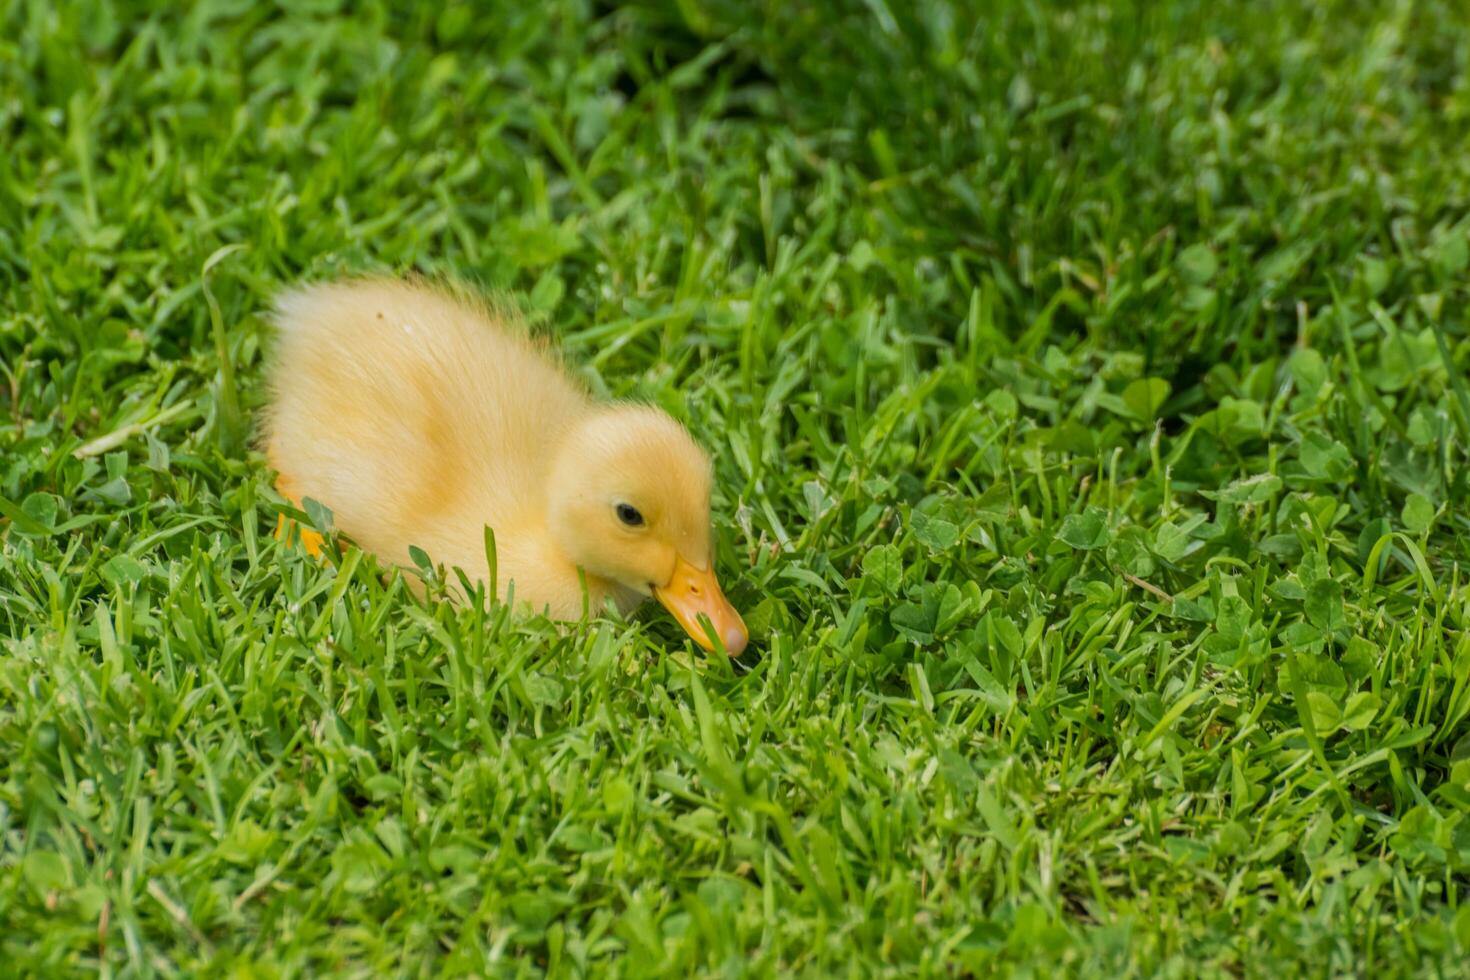 cher duveteux lumière Indien coureur canard bébé séance dans Frais vert herbe photo